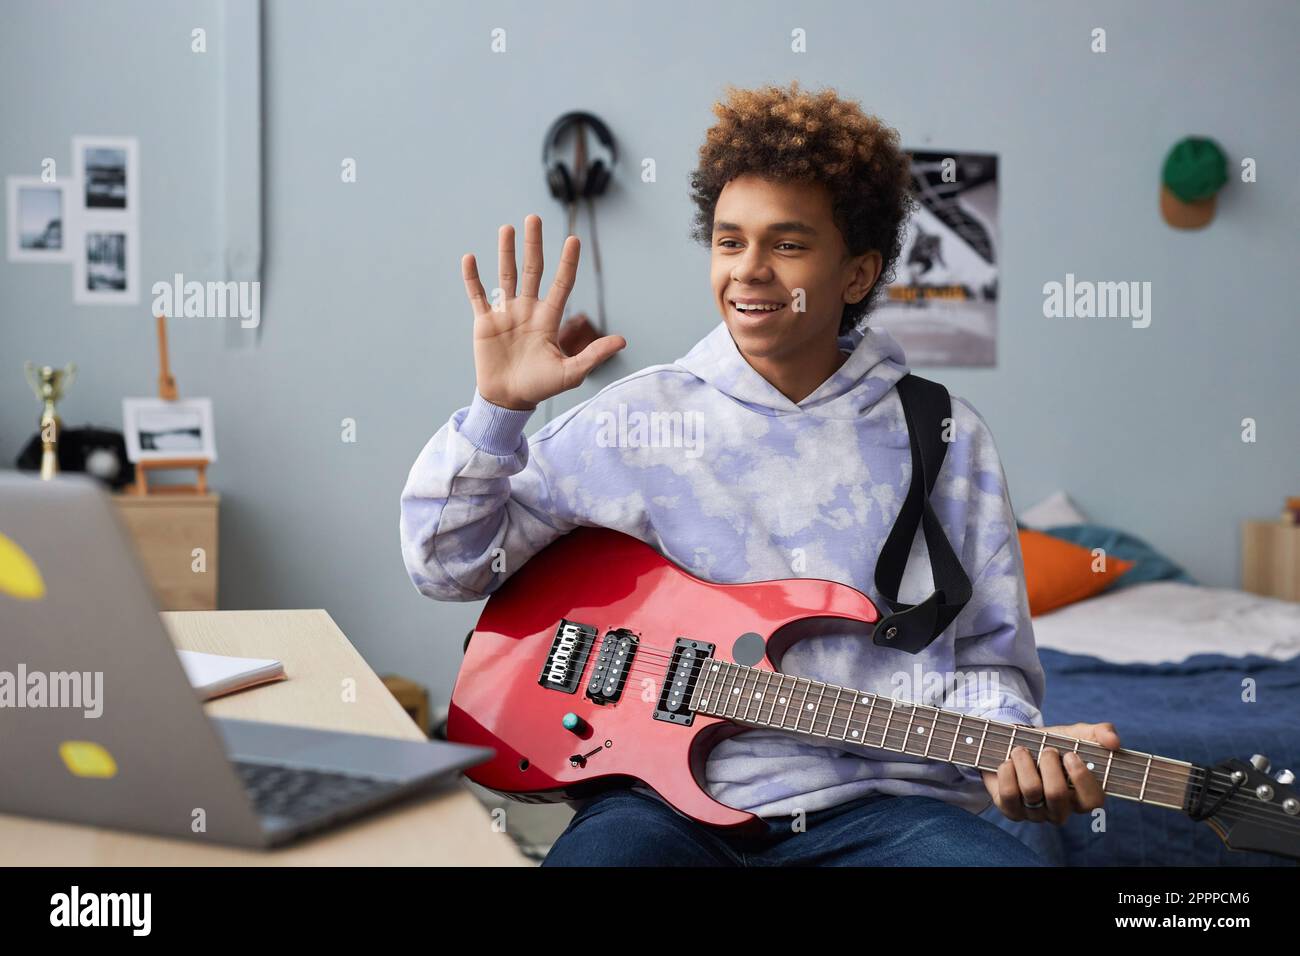 Glücklicher Teenager in Freizeitkleidung begrüßt seinen Musiklehrer, indem er vor dem Online-Unterricht mit der Hand wedelt, während er vor dem Laptop auf dem Bett sitzt Stockfoto